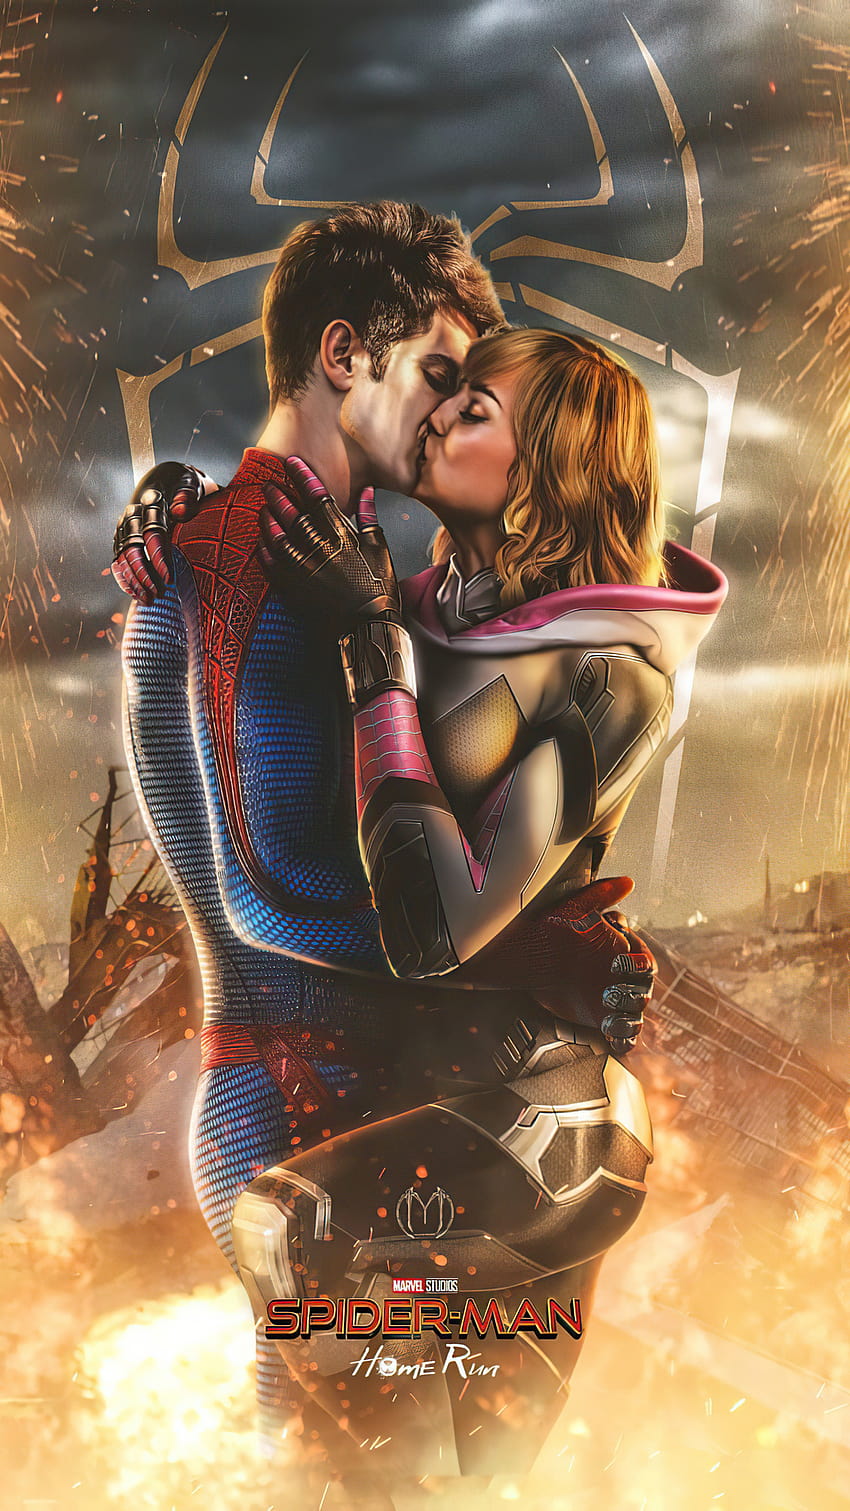 1080x1920 Spiderman und Gwen Stacy küssen Iphone 7,6s,6 Plus, Pixel xl, One Plus 3,3t,5, Hintergründe und Spiderman Gwen Stacy HD-Handy-Hintergrundbild